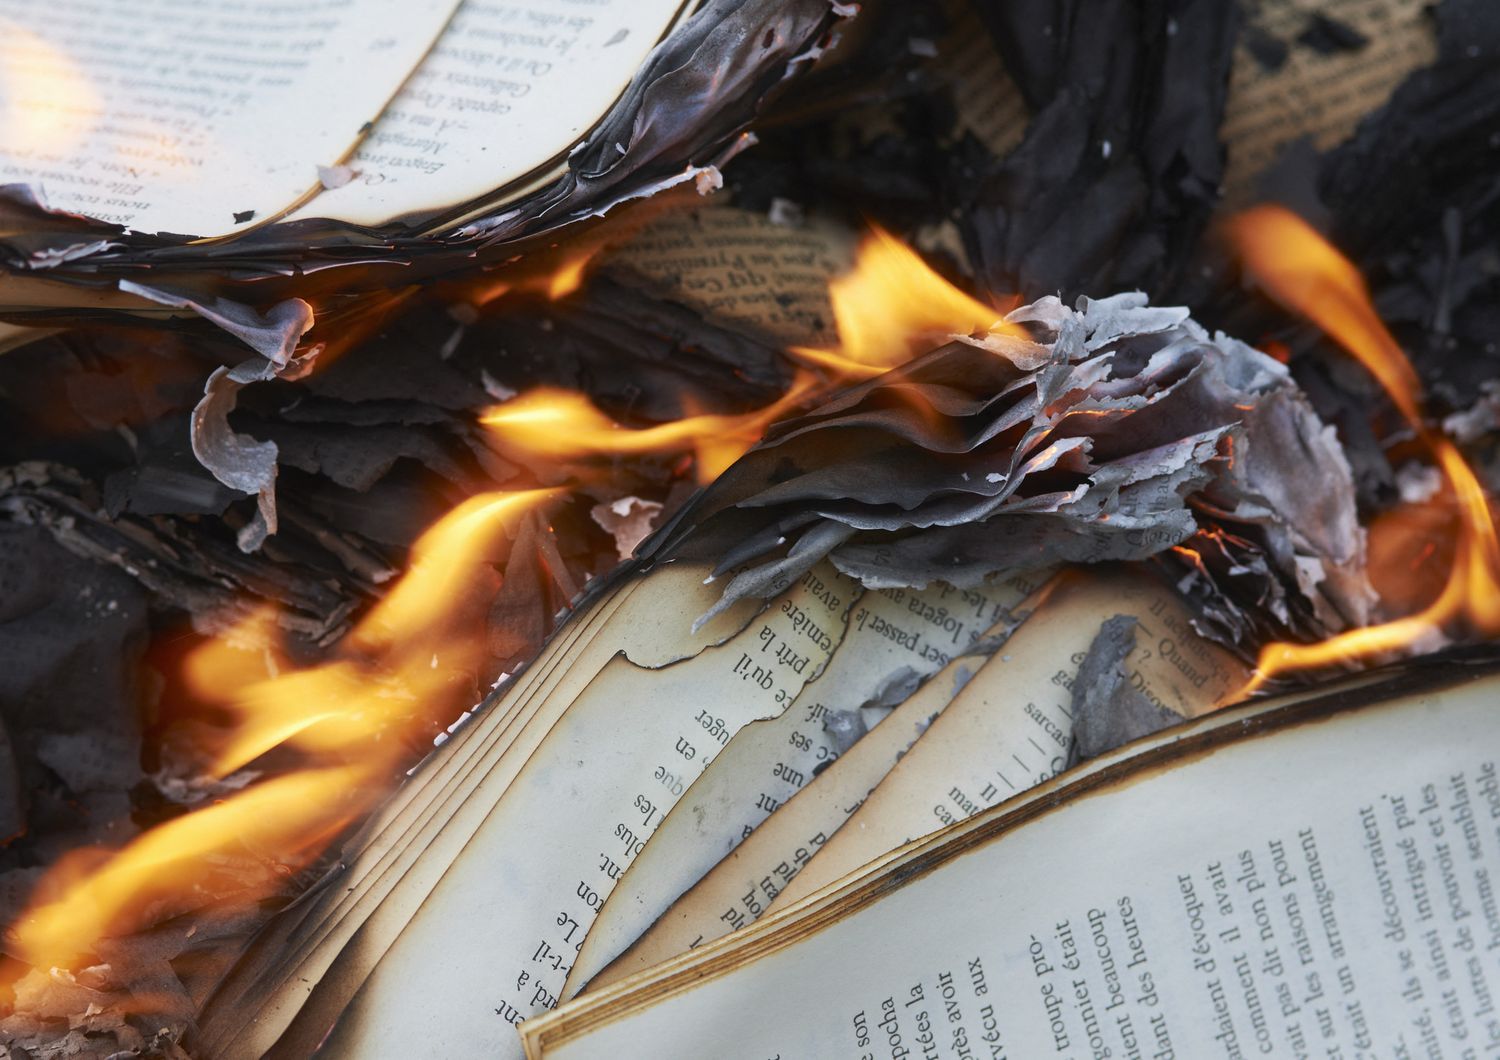 Libri che bruciano